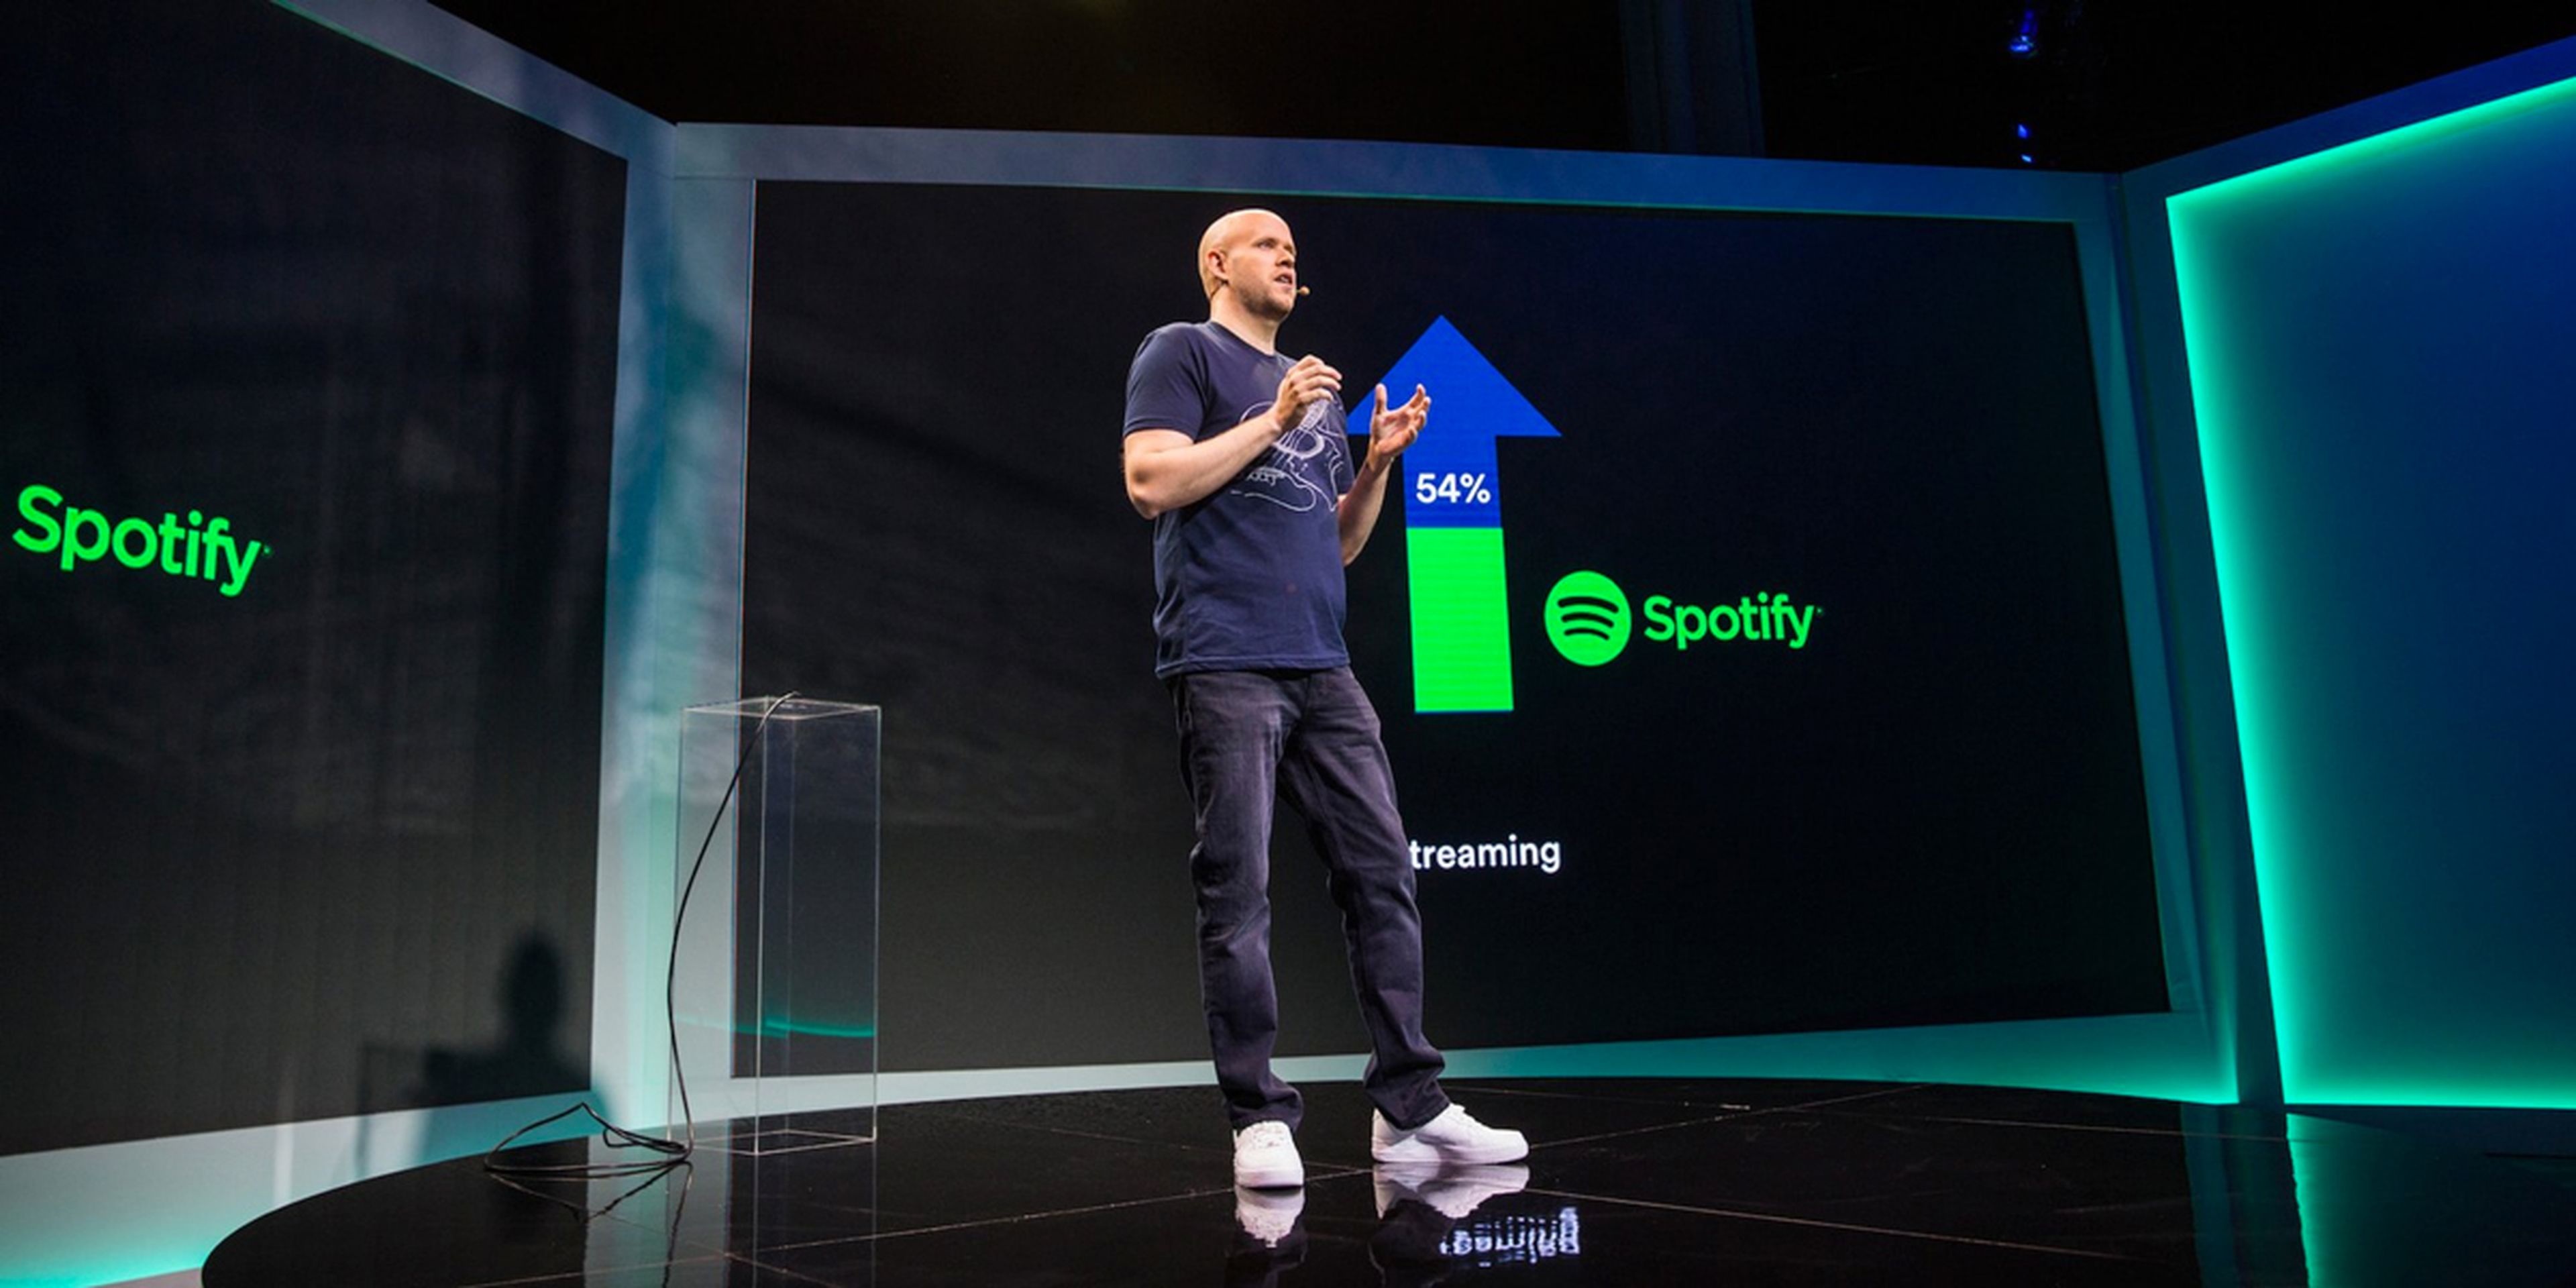 Spotify CEO Presentacion